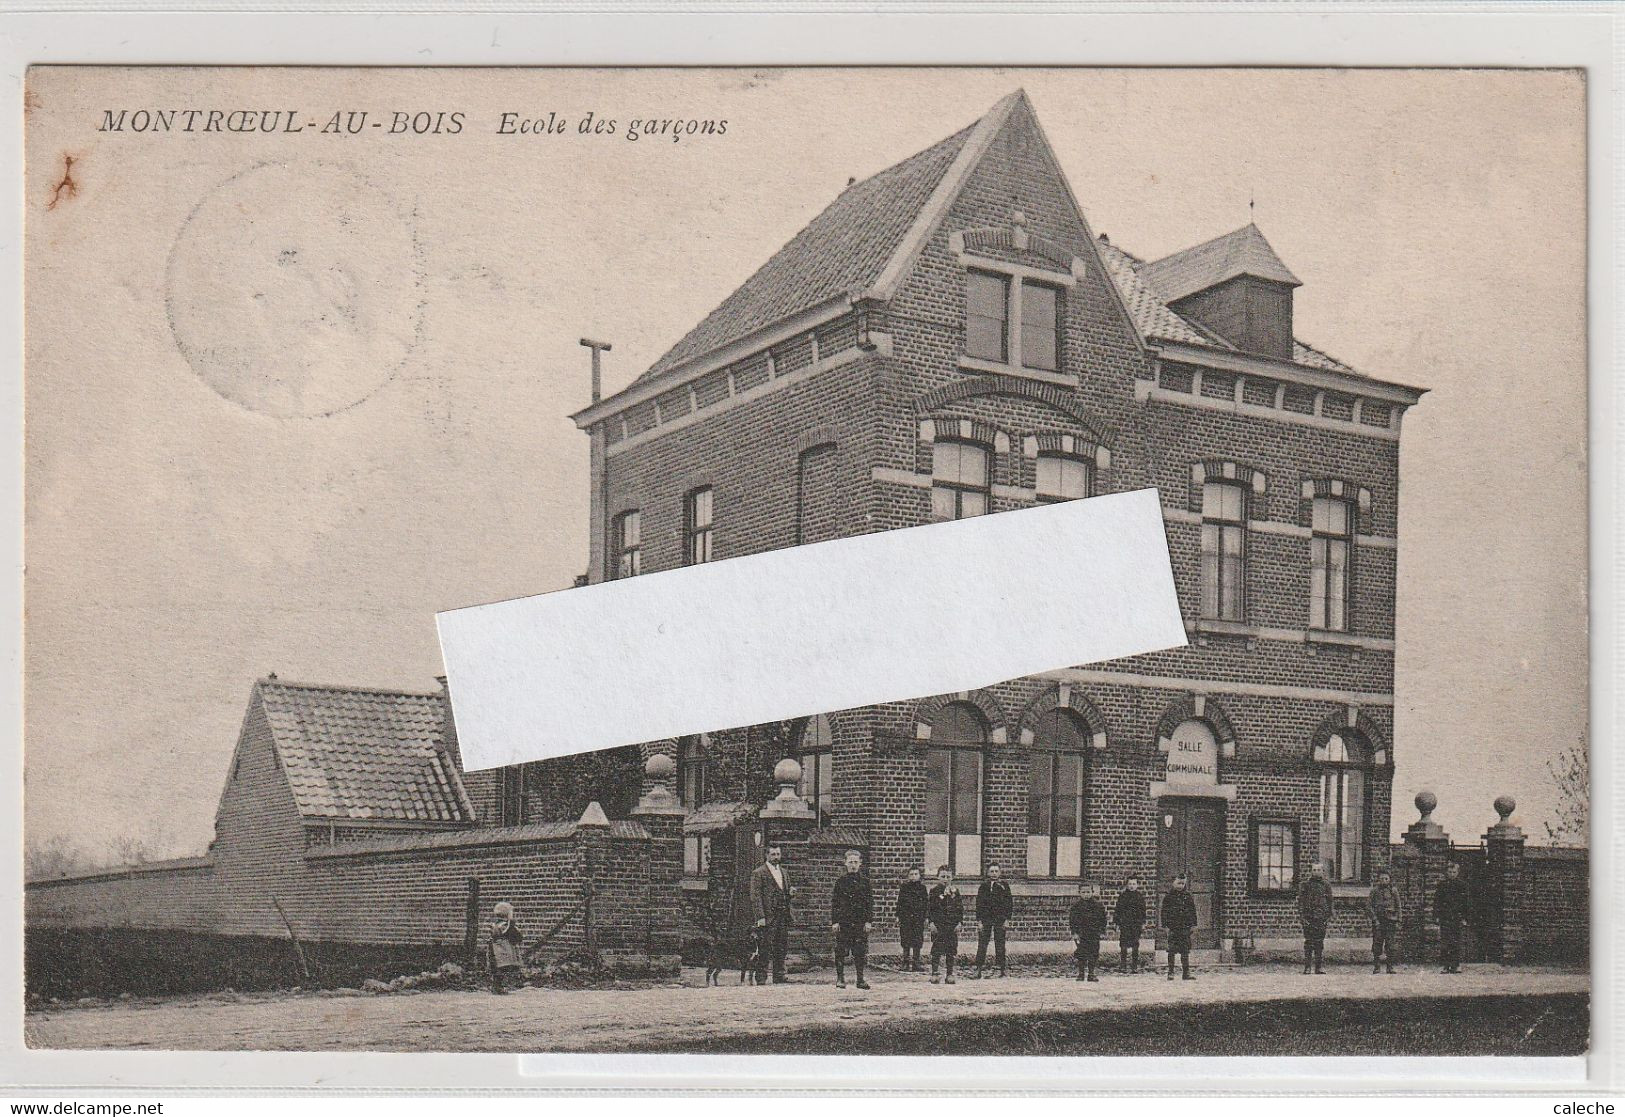 Montroeul-au-bois -Ecole Des Garçons Animée - Verso Relais Montroeul-au-Bois 1907 (Coba 15 Euros) - Frasnes-lez-Anvaing